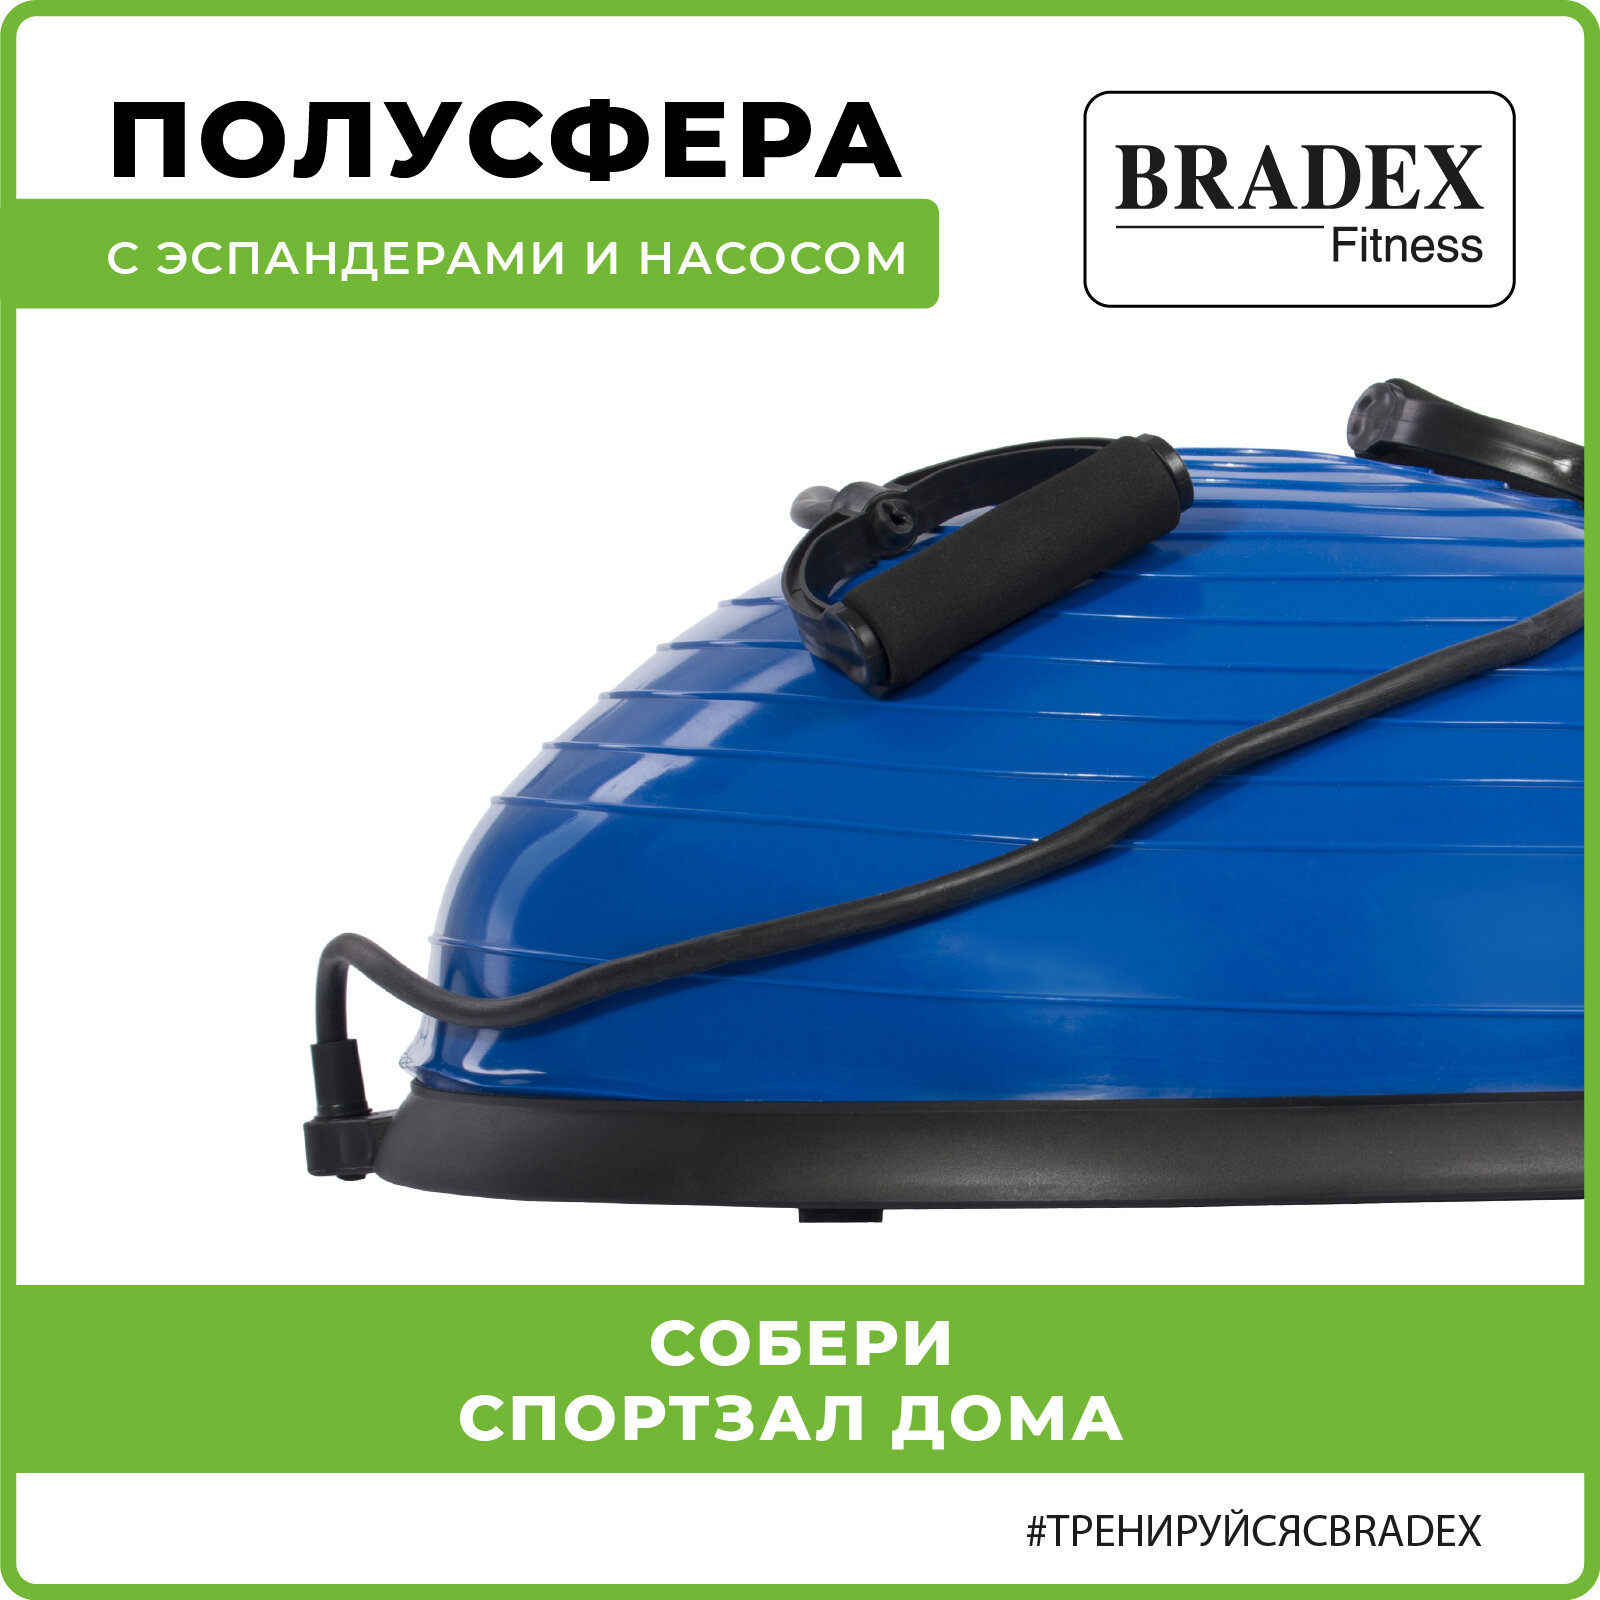 Балансировочная подушка, полусфера, Bradex / Степ платформа, bosu / Спортивный баланс борд, взрослый / Эспандер и насос в наборе